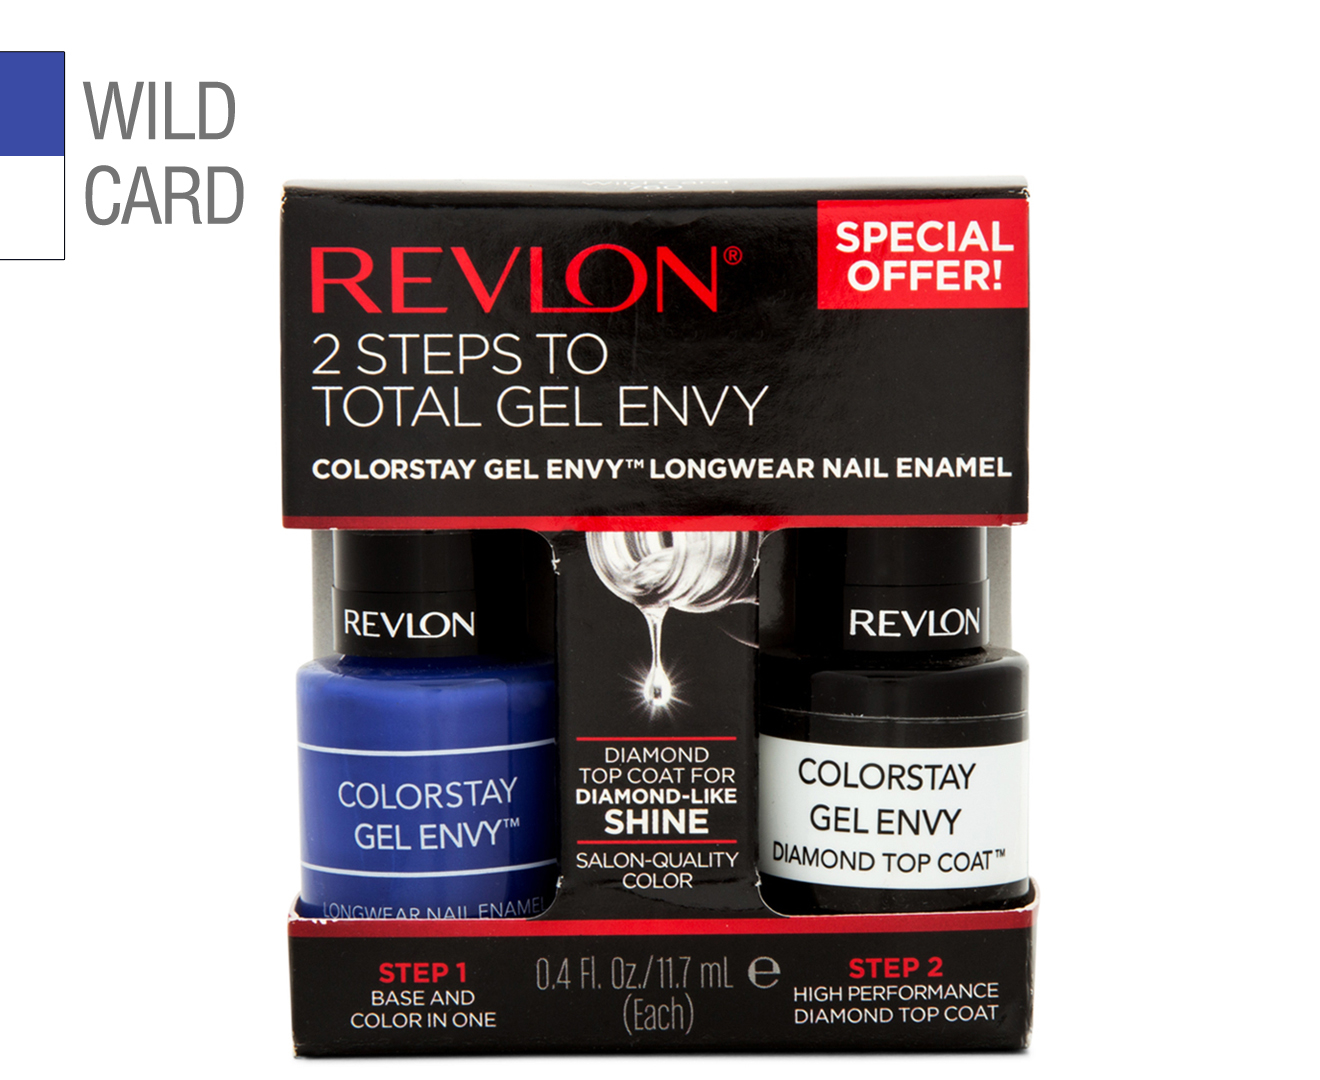 6. Revlon ColorStay Gel Envy in "Wild Card" - wide 9